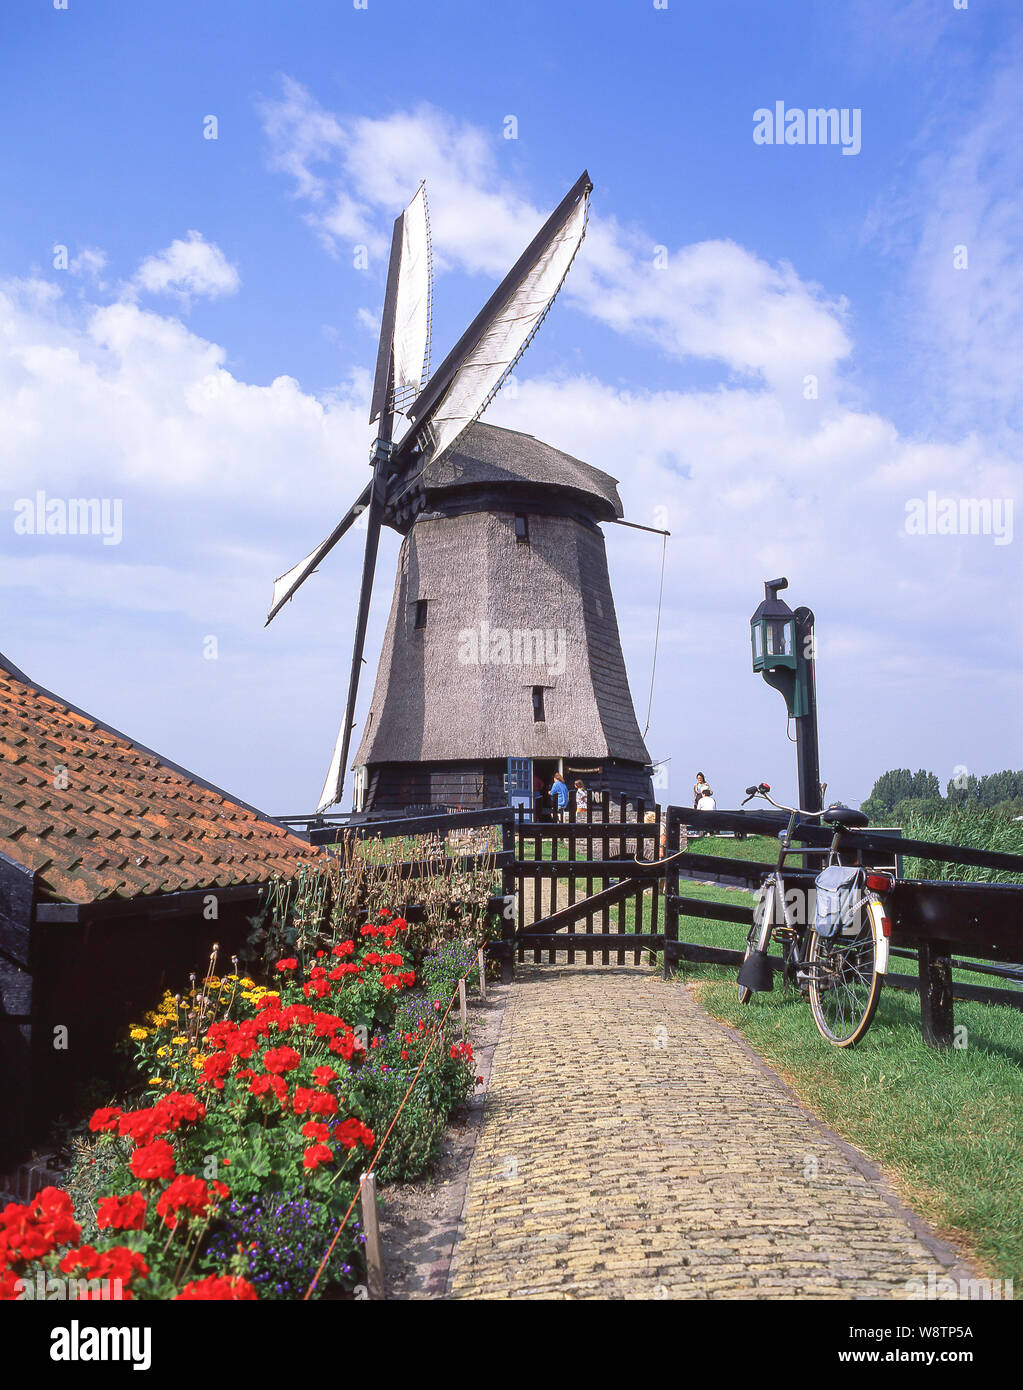 Moulin à eau de 17ème siècle, musée Schermerhorn, Alkmaar, Noord-Holland, Royaume des Pays-Bas Banque D'Images